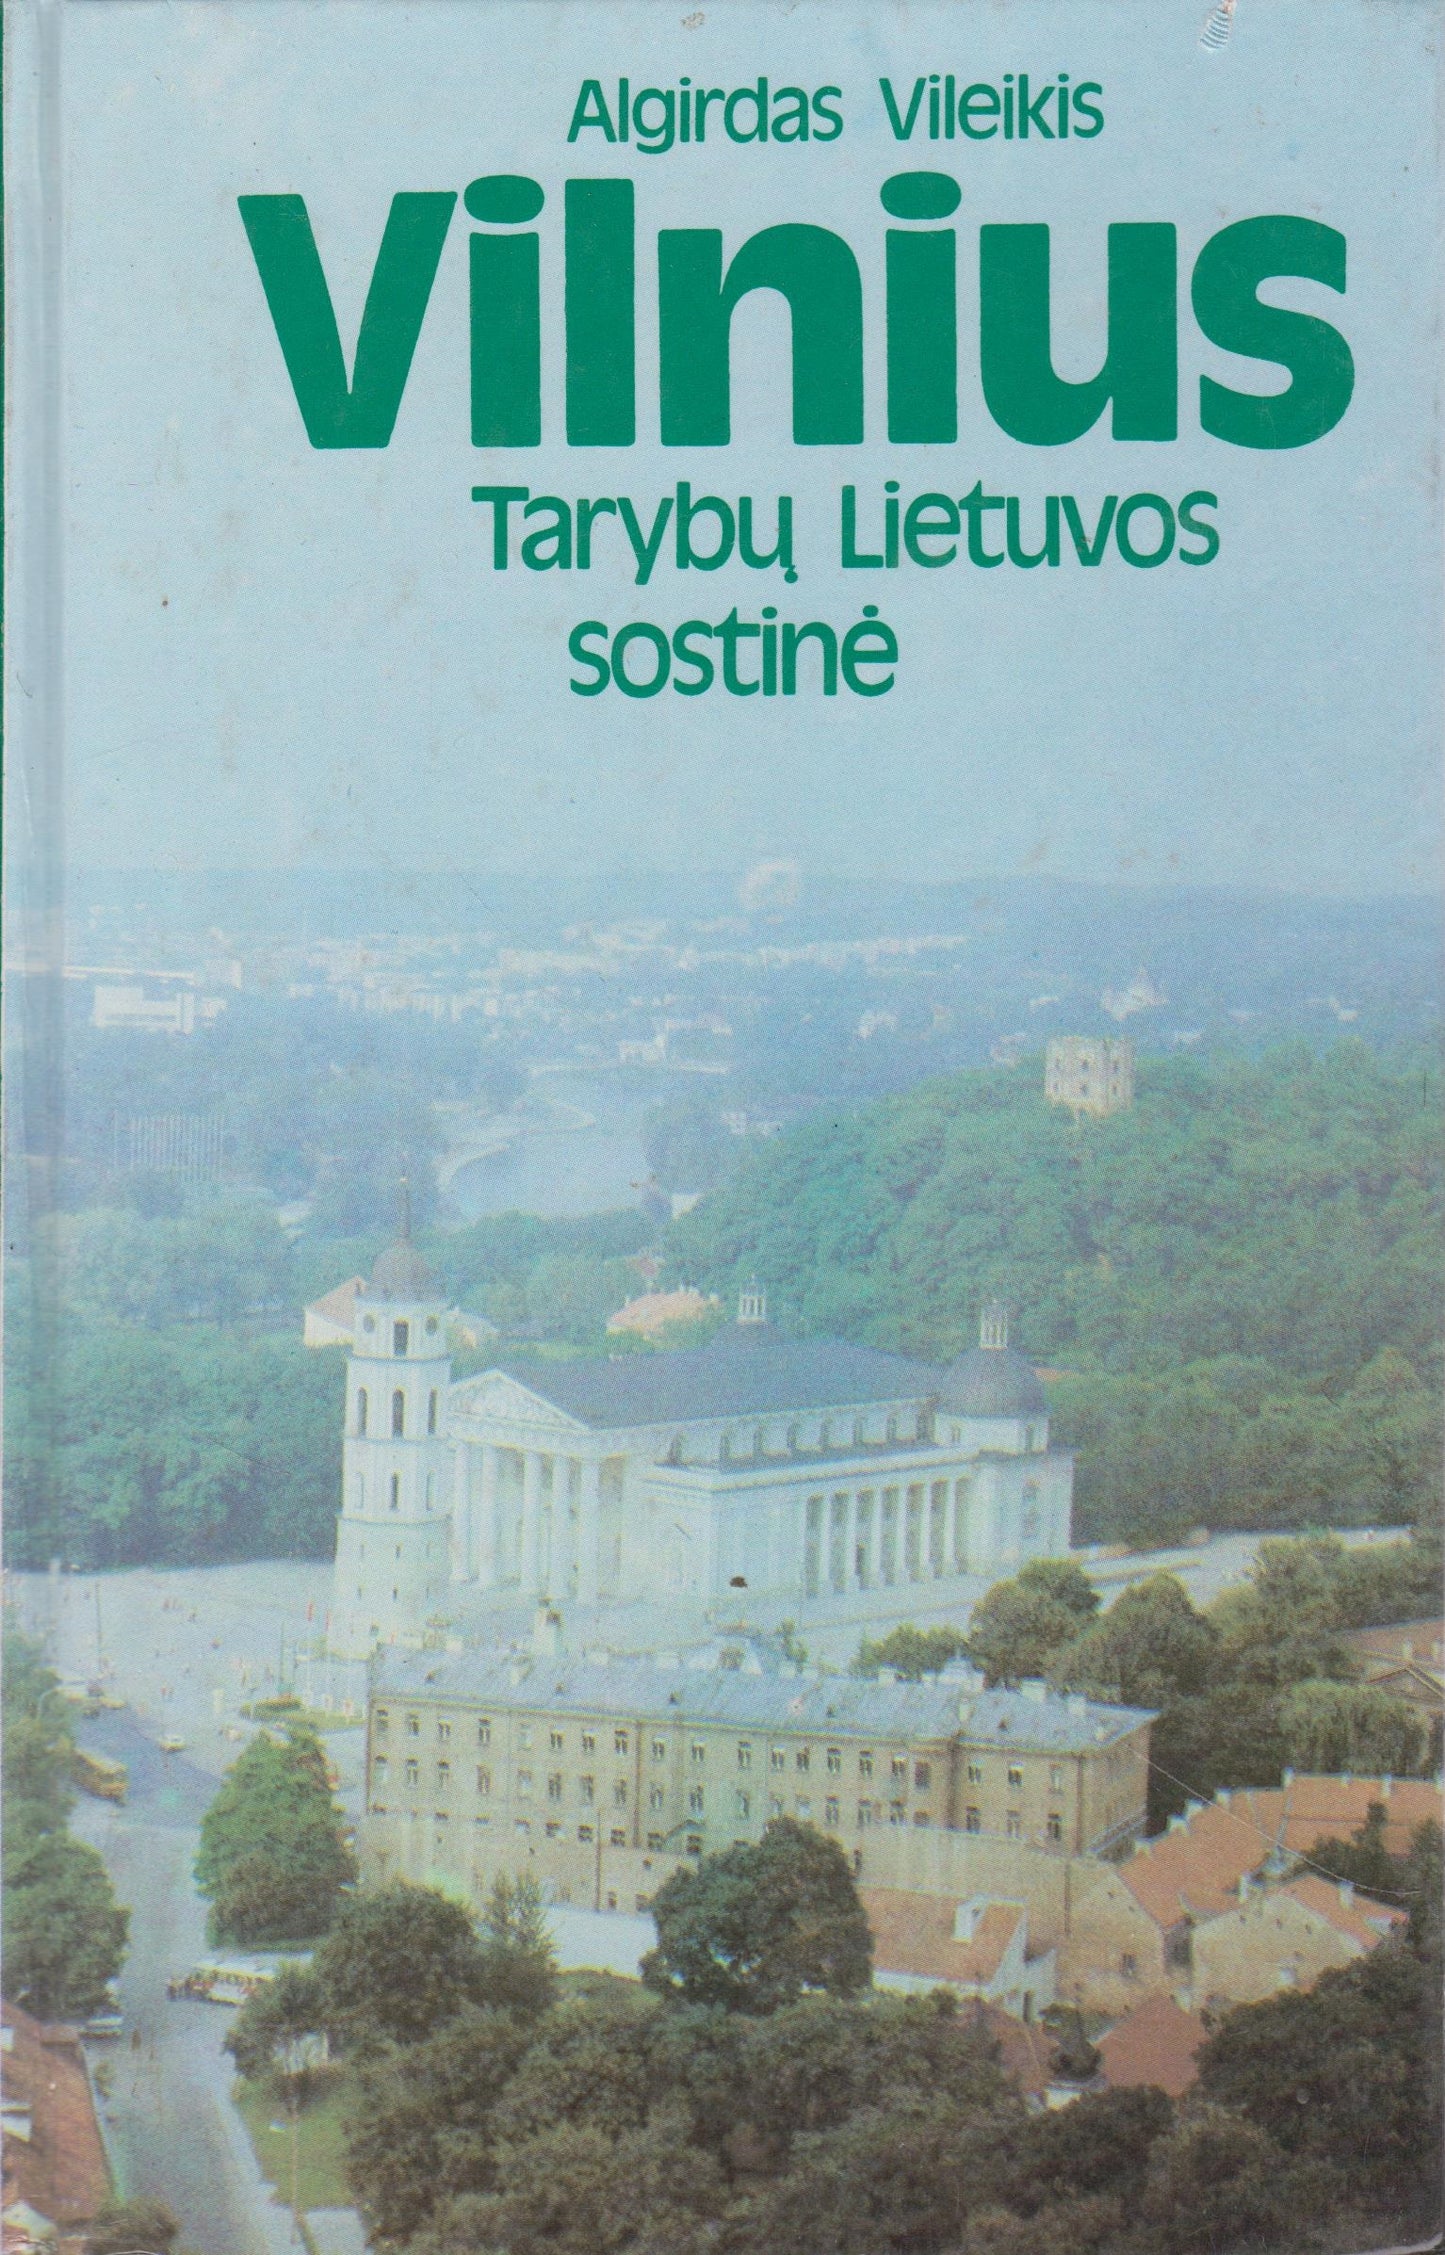 Vilnius - Tarybų Lietuvos sostinė